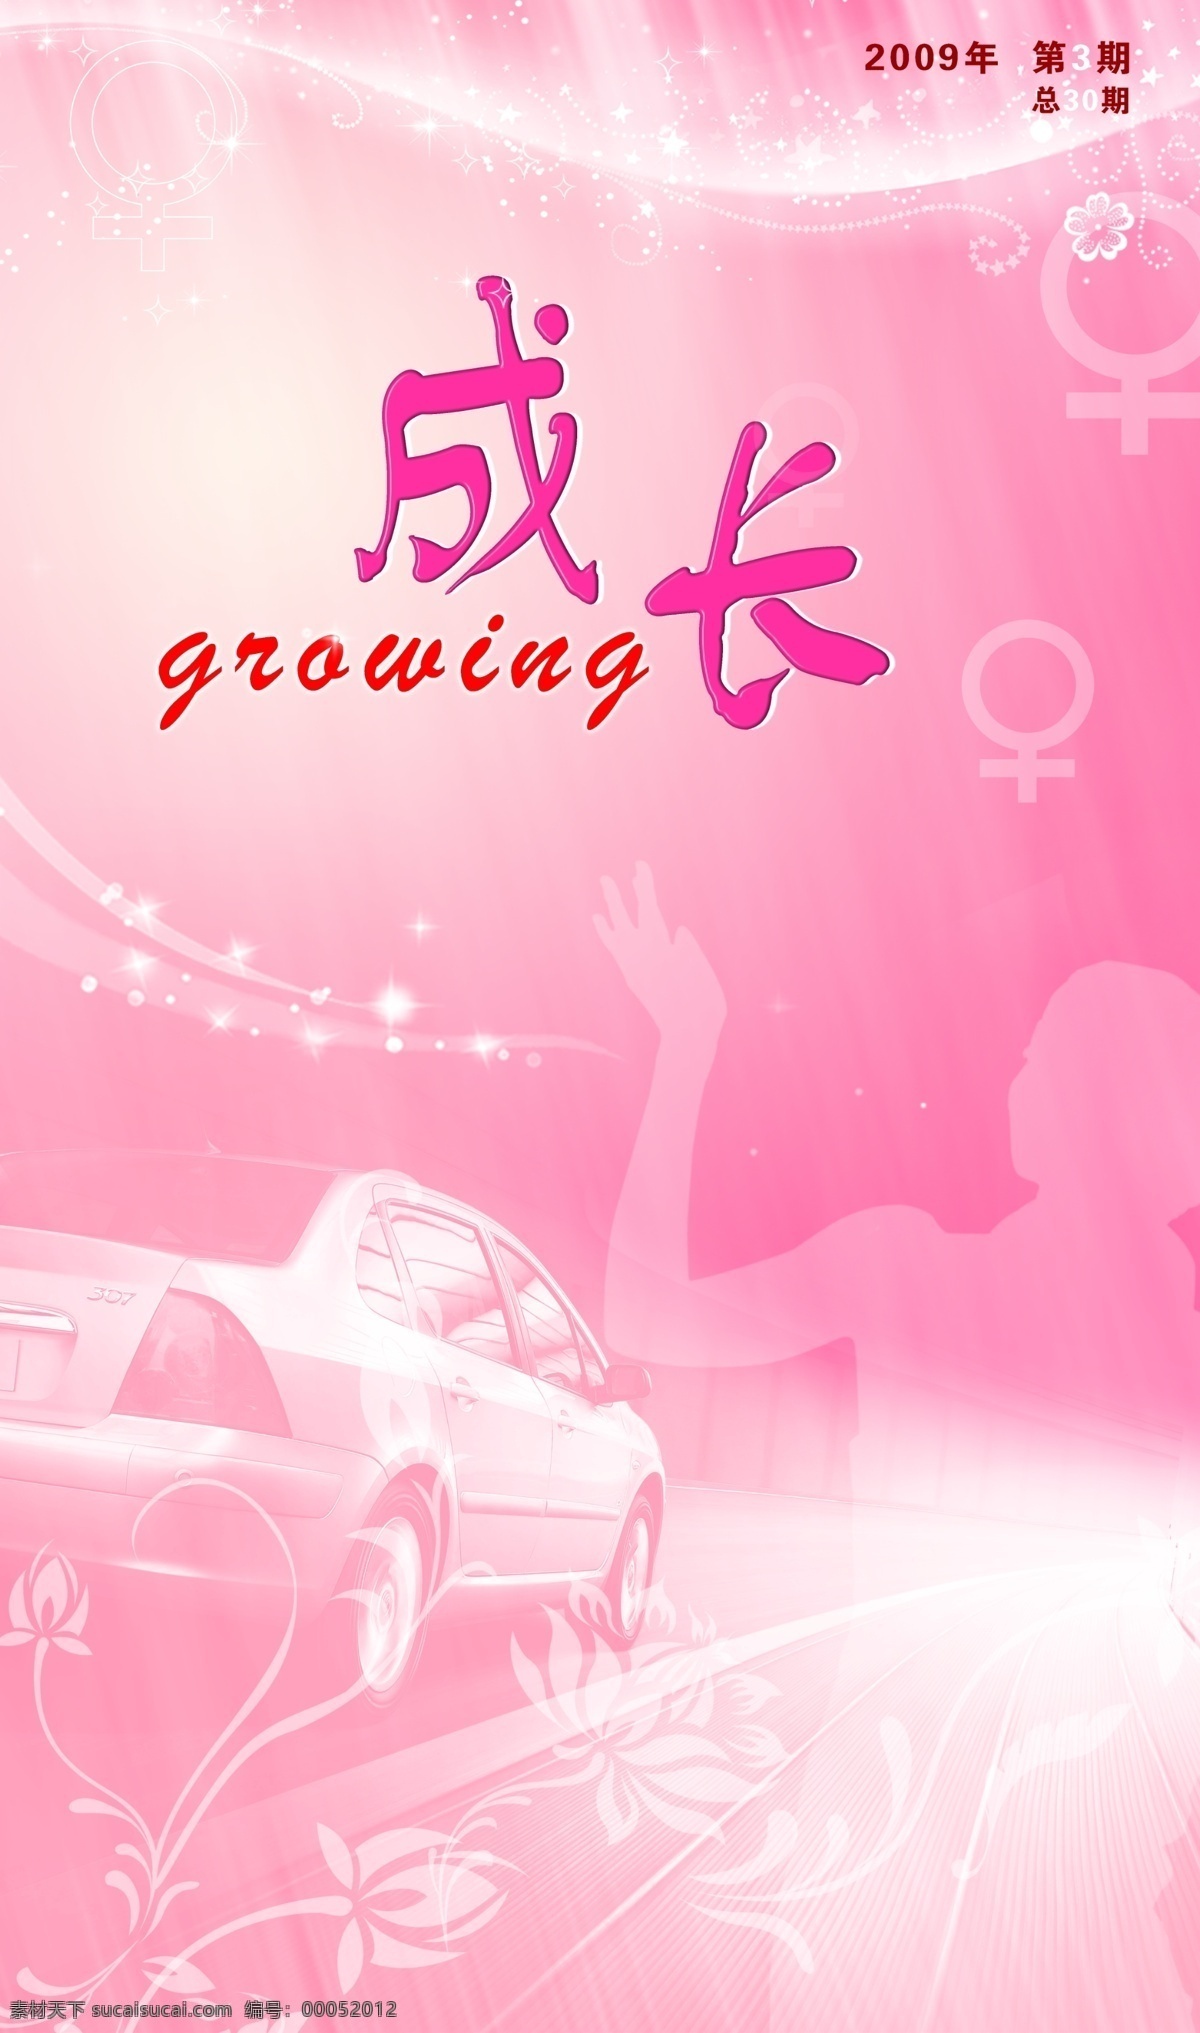 神龙汽车公司 三 八 活动 背景图片 分层 粉色 花 男女符号 女人 汽车 源文件库 背景 节日素材 妇女节